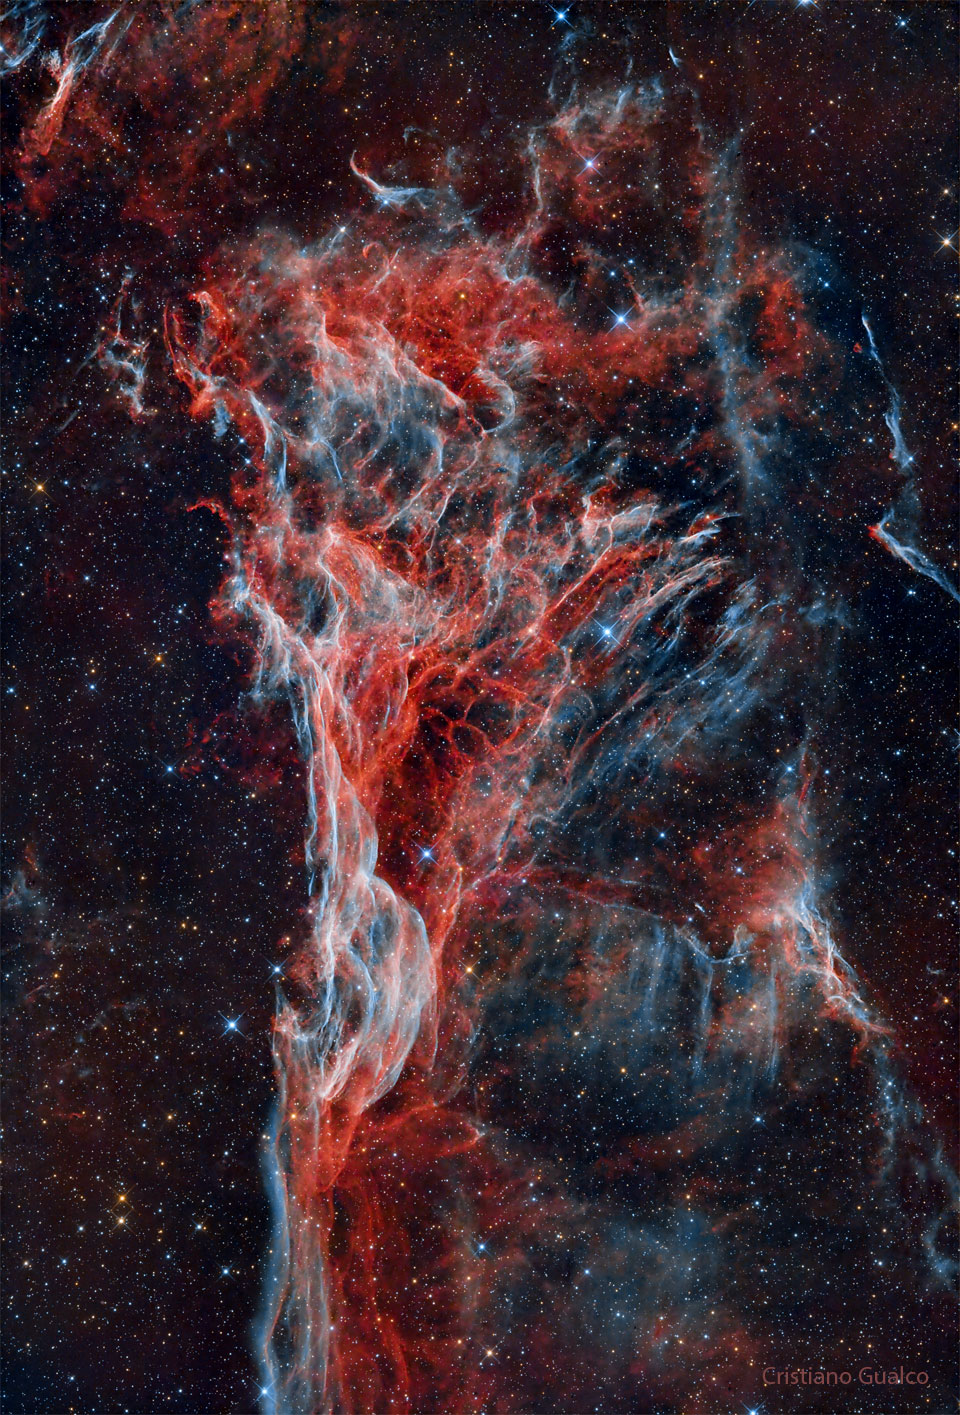 Vor dem Hintergrund, der mit Sternen gesprenkelt ist, breiten sich rot-blau-weiße Fasern aus, die eine entfernt dreieckige Form haben.